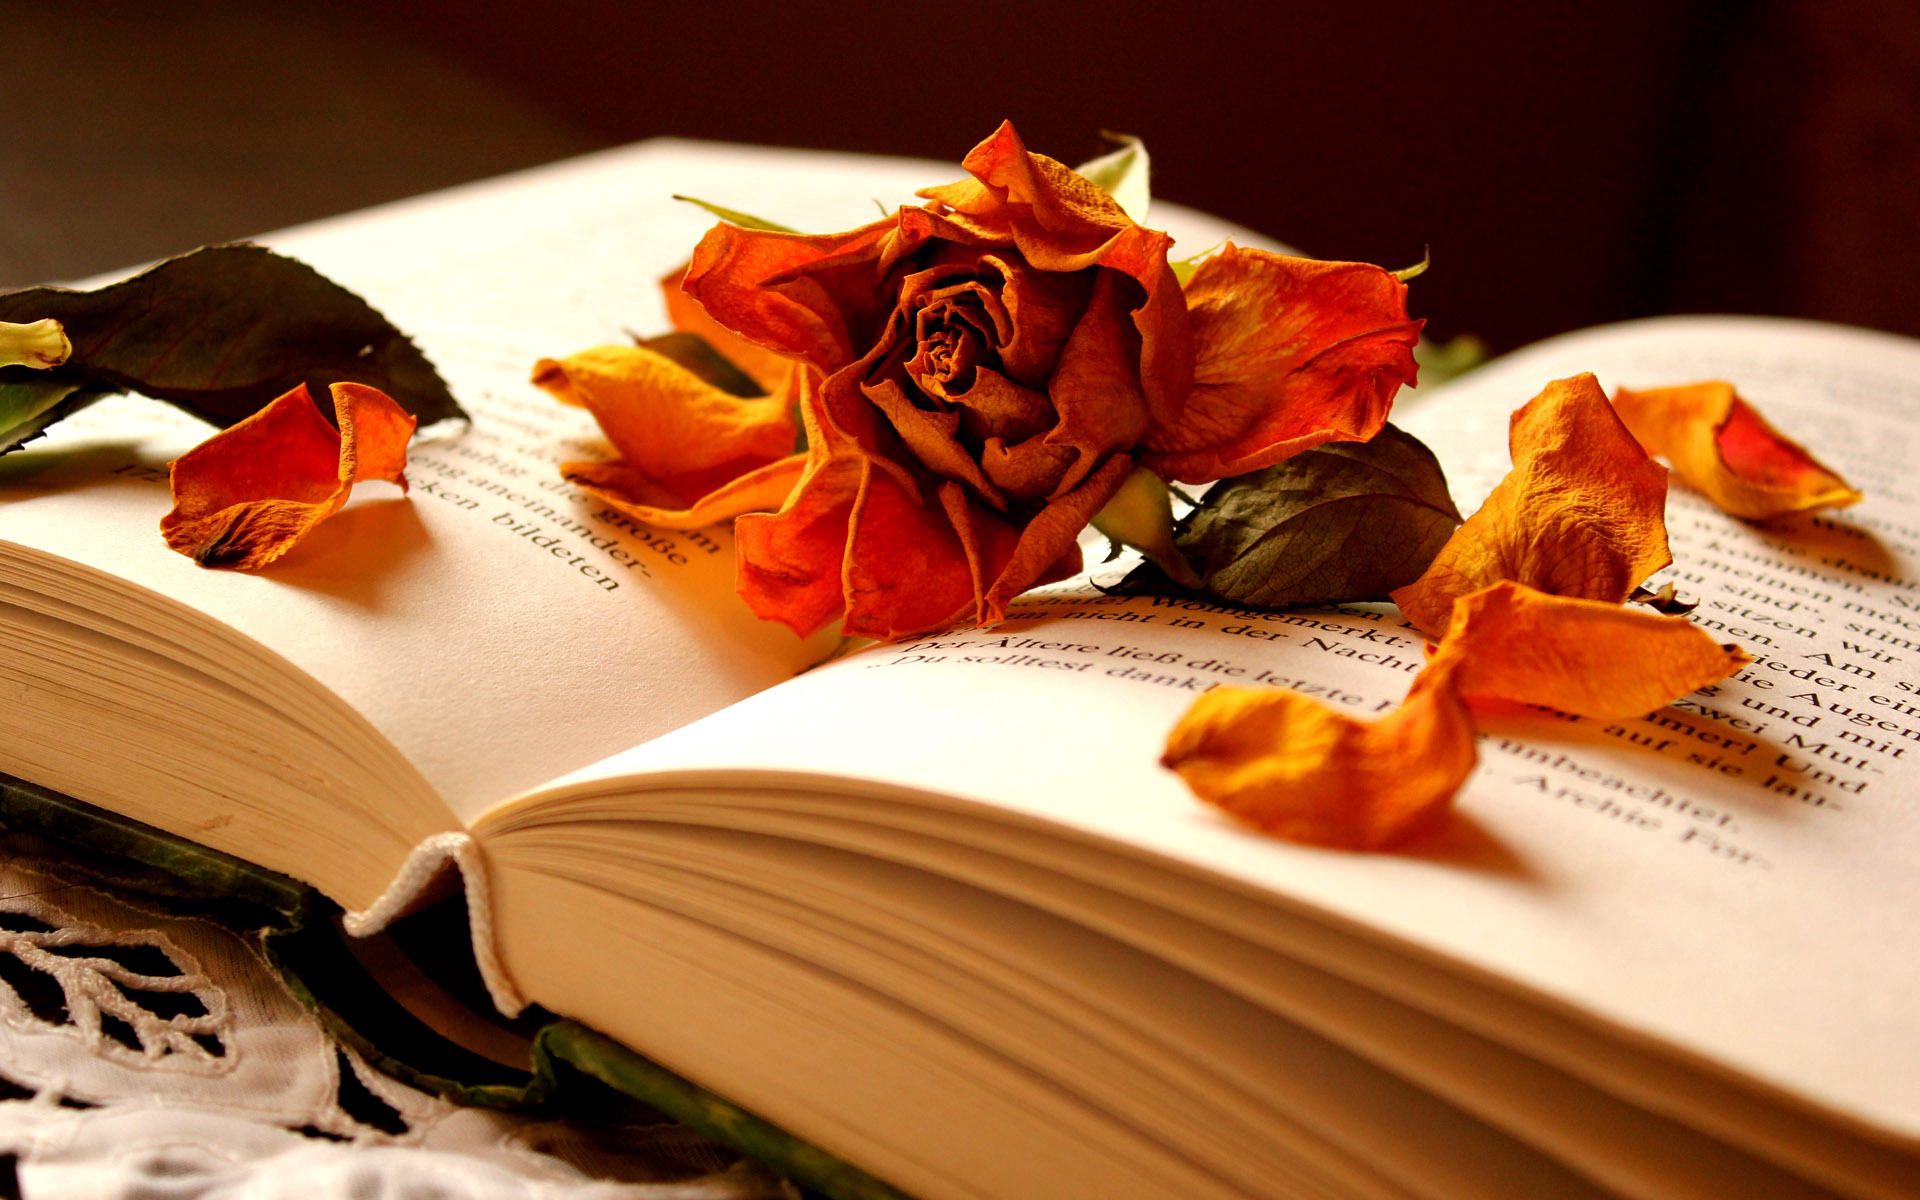 Скачать обои бесплатно Книга, Сухая, Лепестки, Роза, Разное, Цветок картинка на рабочий стол ПК